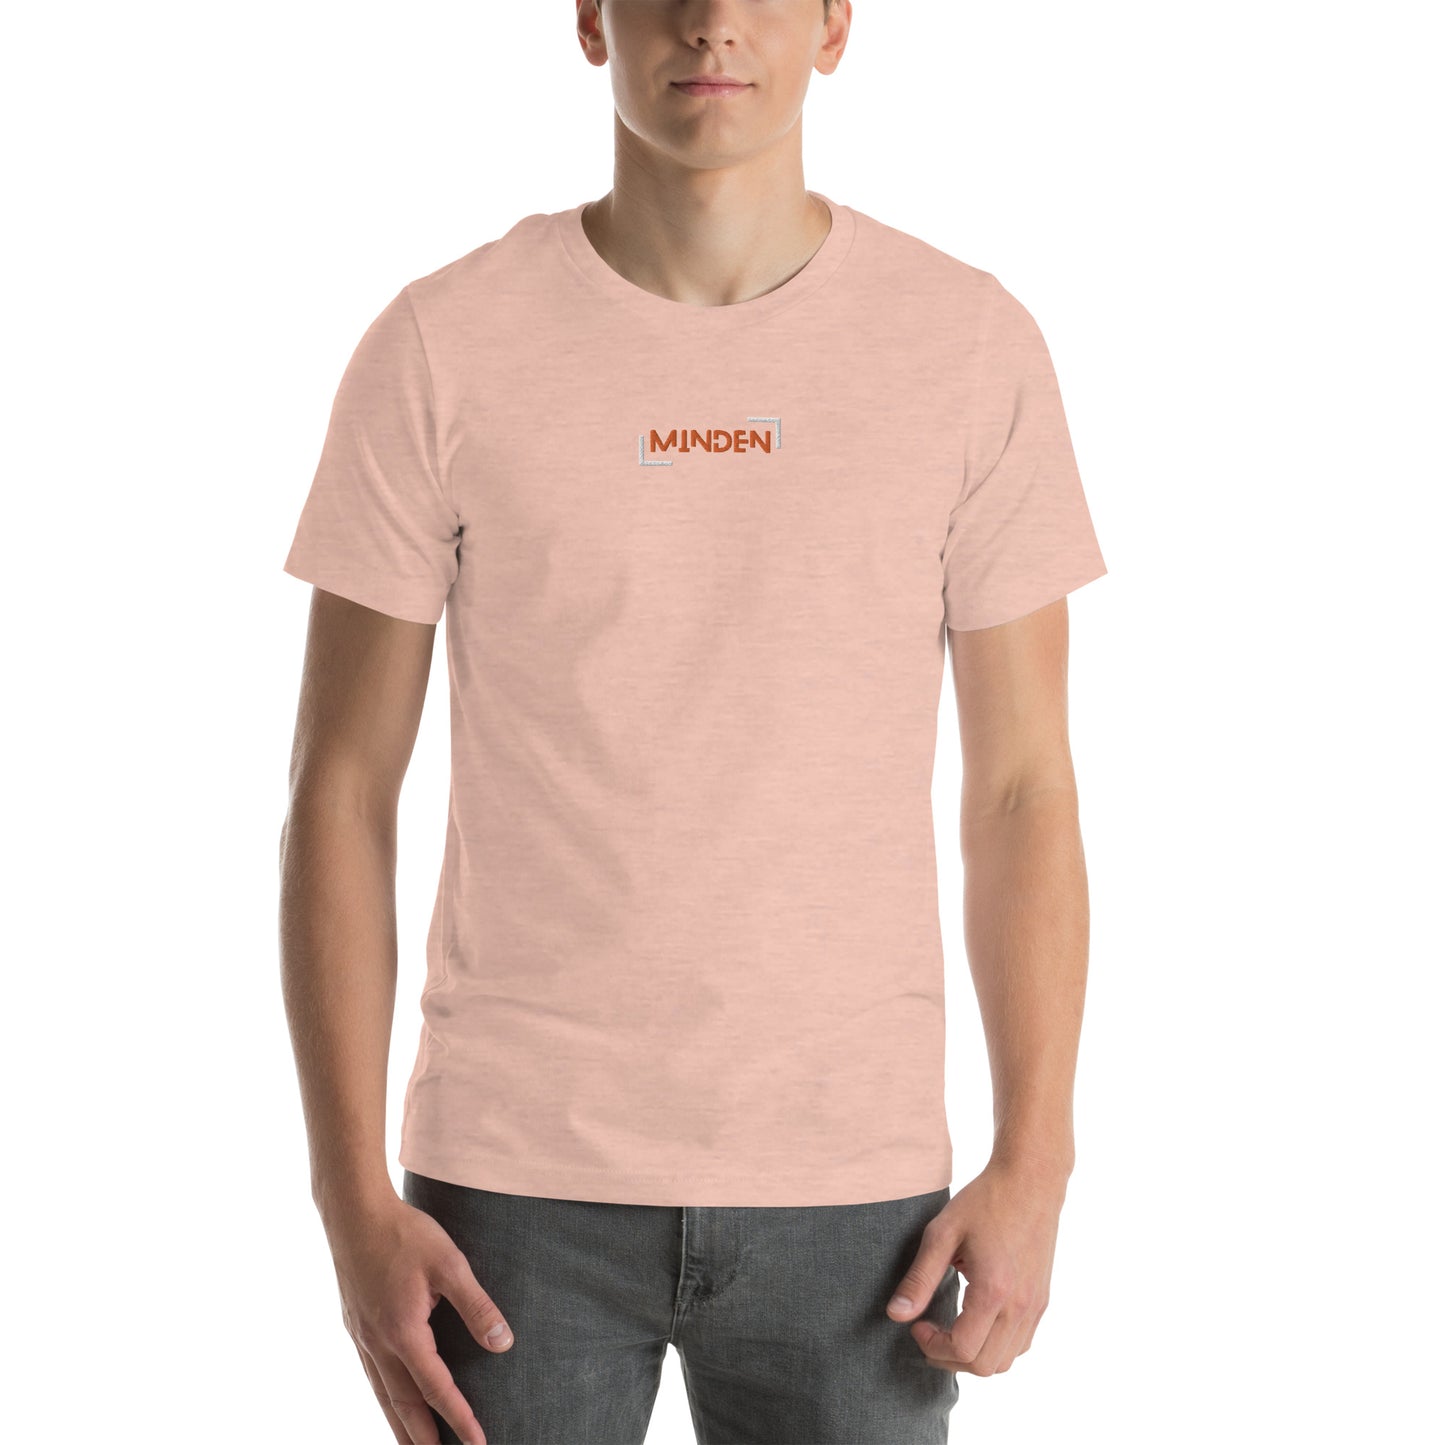 0-A-00 Minden Unisex t-shirt